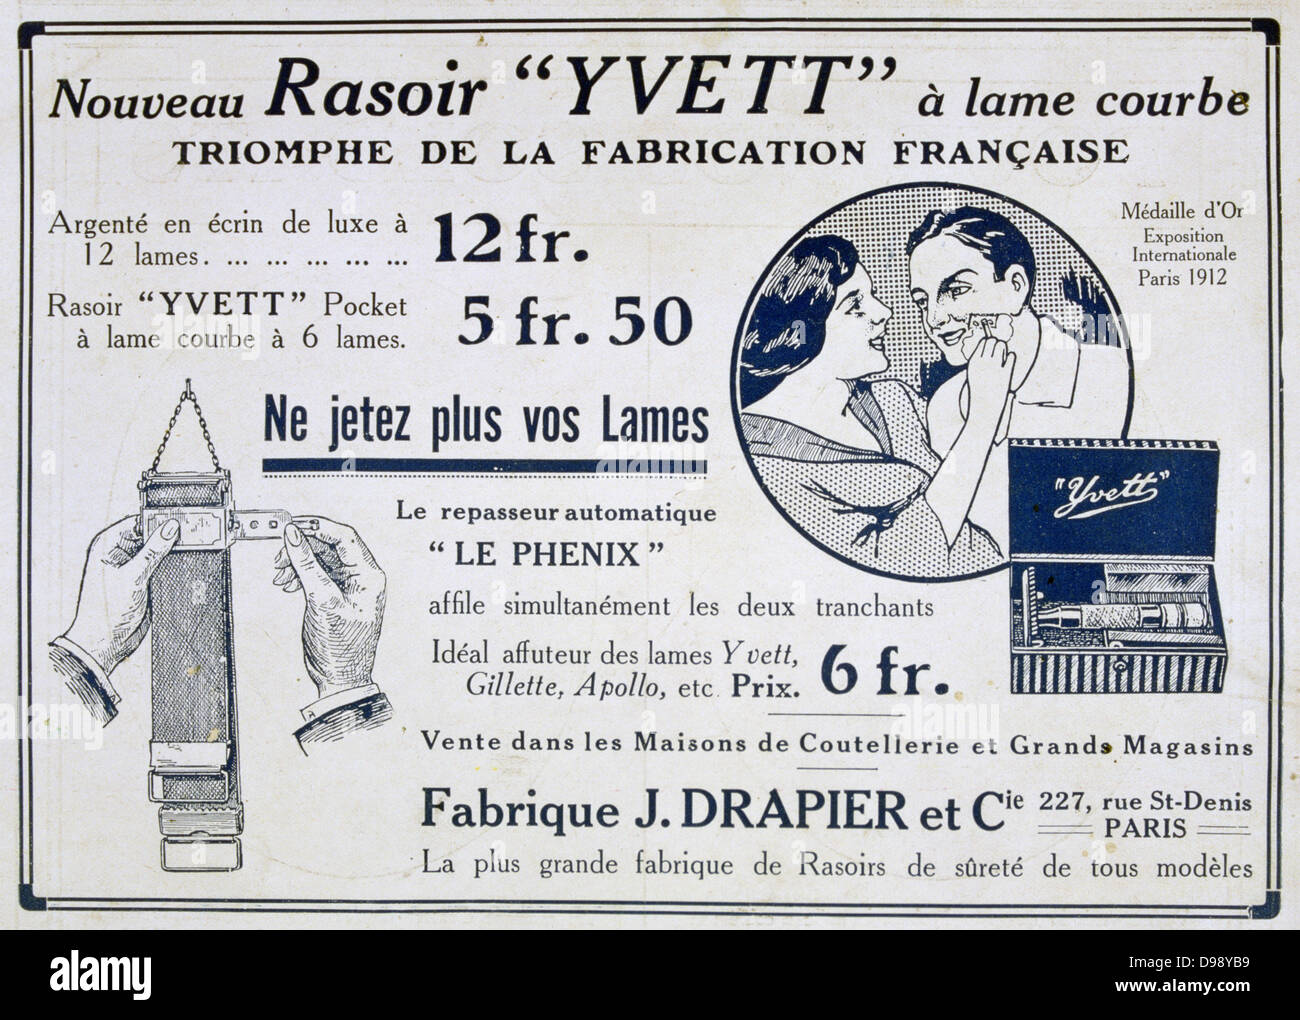 Pubblicità per la tasca Yvett rasoio e un strop per rasoi di affilatura. Dalla rivista francese "Le Flambeau', 18 settembre 1915. La prima guerra mondiale (1914-1918). Foto Stock